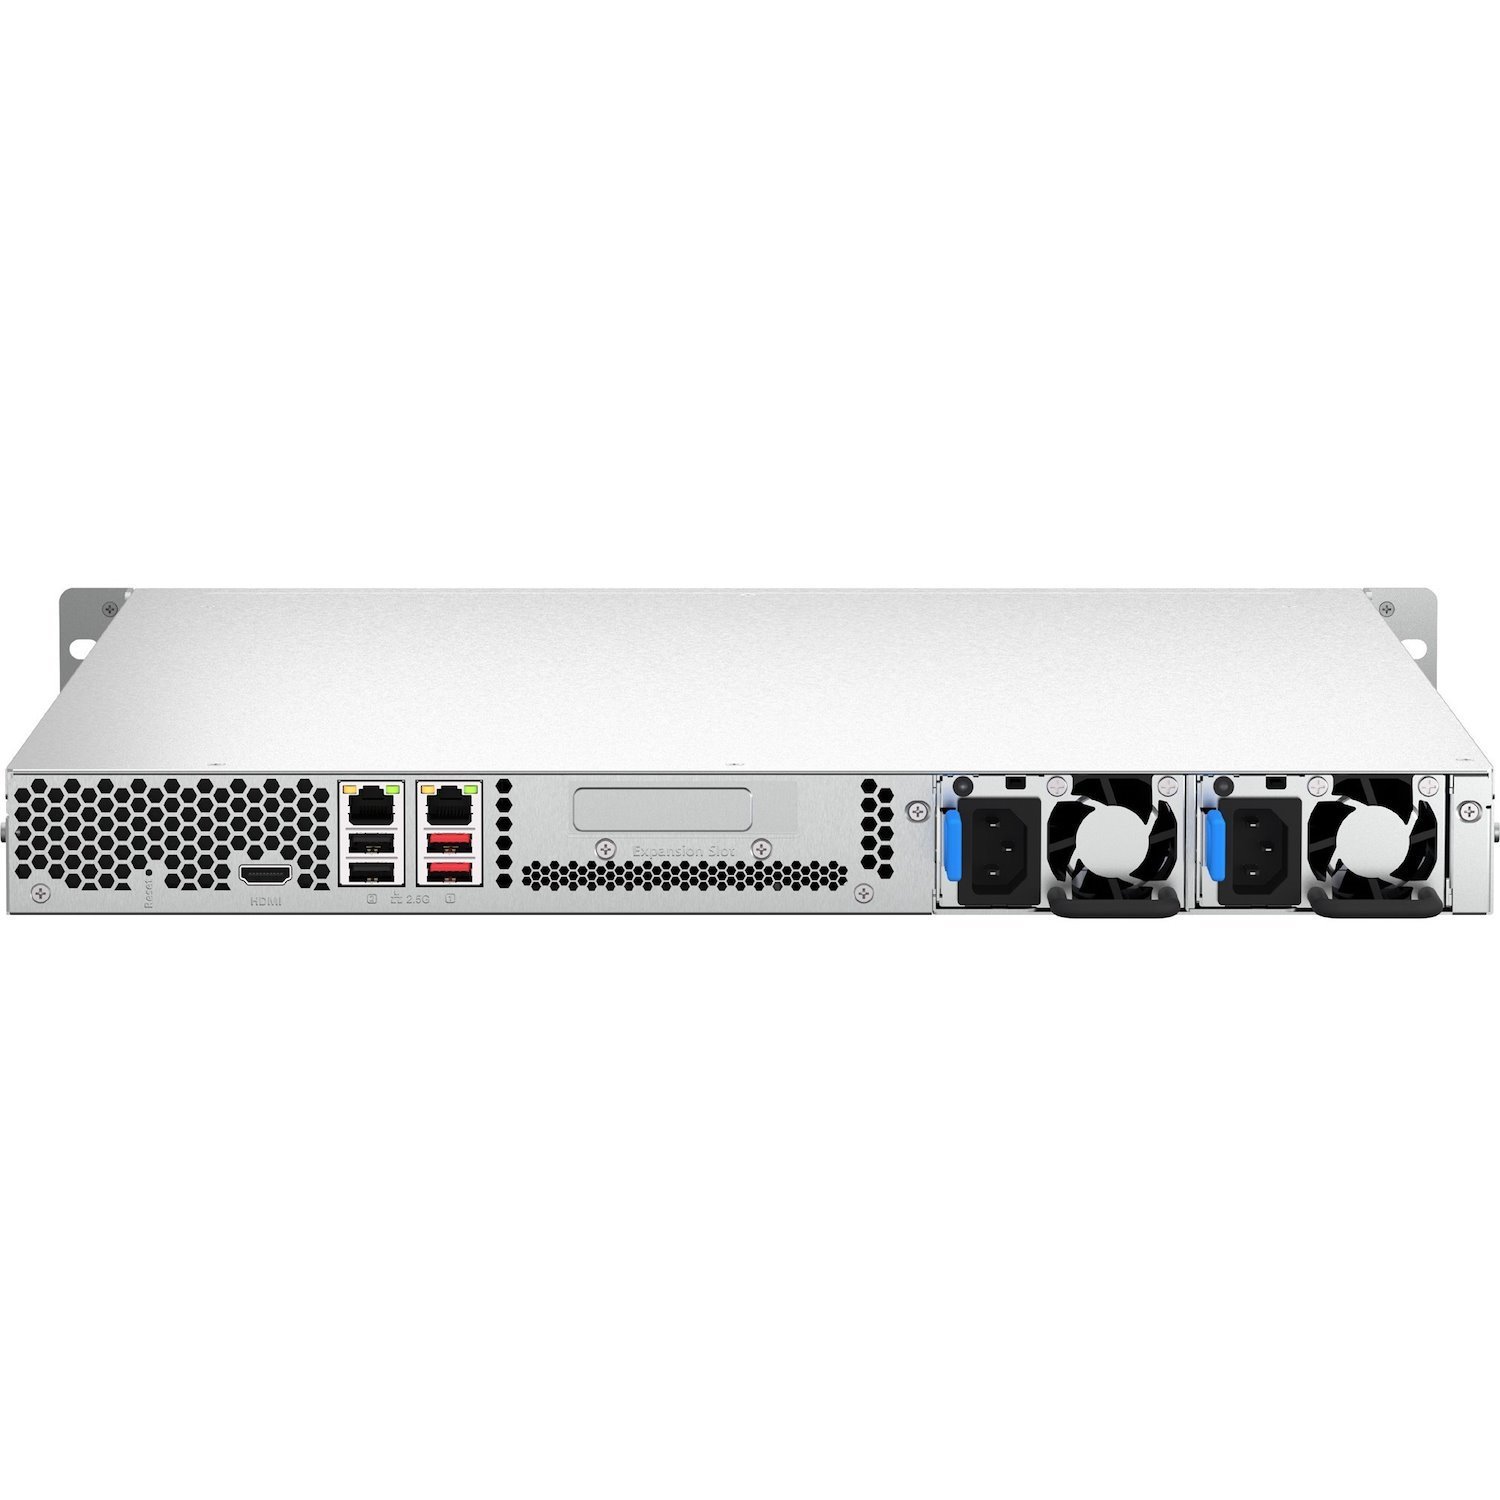 QNAP TS-464U-8G 4 x Total Bays SAN/NAS Storage System - 4 GB Flash Memory Capacity - Intel Celeron N5095 Quad-core (4 Core) - 8 GB RAM - DDR4 SDRAM - 1U Rack-mountable